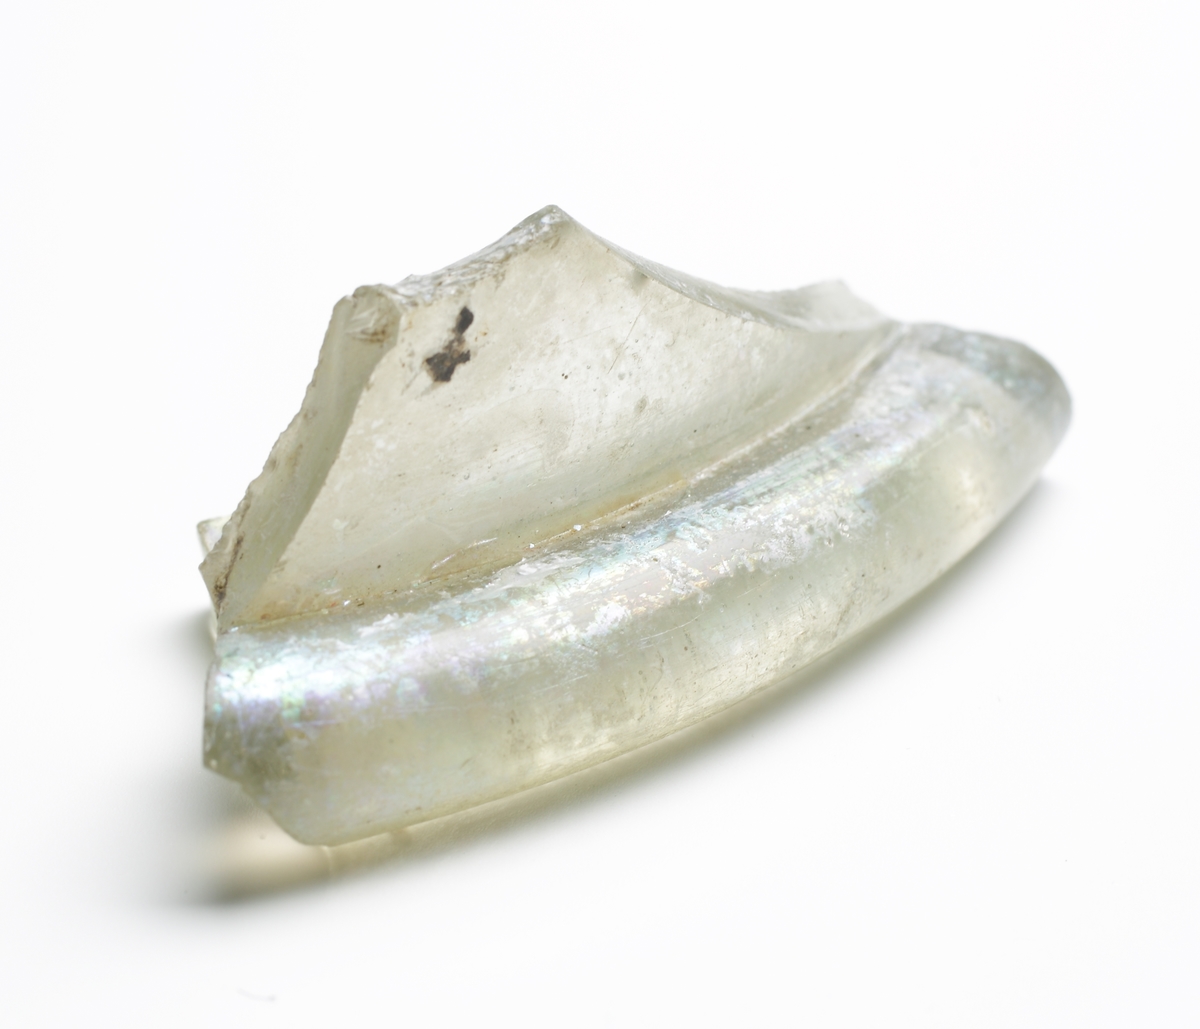 Totalt sexton fragment av en hög cylindrisk och bemålad bägare, kallad reichsadlerhumpen. Ofärgad, men till följd av sk. glassjuka iriserande glasmassa, bemålad med nu delvis avskavd emaljfärg. Åtta fragment utgör delar av en botten med en låg "kinnekulle" och en utanpå liggande glaskant. Två av bottenfragmenten med delar av buken, har motiv i form av klor från en örn och delar av en mörk fjäderskrud. Ytterligare fem bukbitar har delar av samma fjäderskrud, ibland som bakgrund till en eller flera vapensköldar. På ett av fragmenten syns yttersta delen av ett rött mittkrucifix med Kristi hand samt delar av en vit vapensklöld med ett rött kors och ett inskriftsband i vinkel (texten: POTESTATE ZU ROM). På ett annat fragment syns krusifixets nedre del med delar av Jesu fot, mot en bakgrund av örnens stjärtfjädrar. Se Referenser/Digitala objekt för att se ett liknande, komplett objekt från The Corning Museum of Glass.